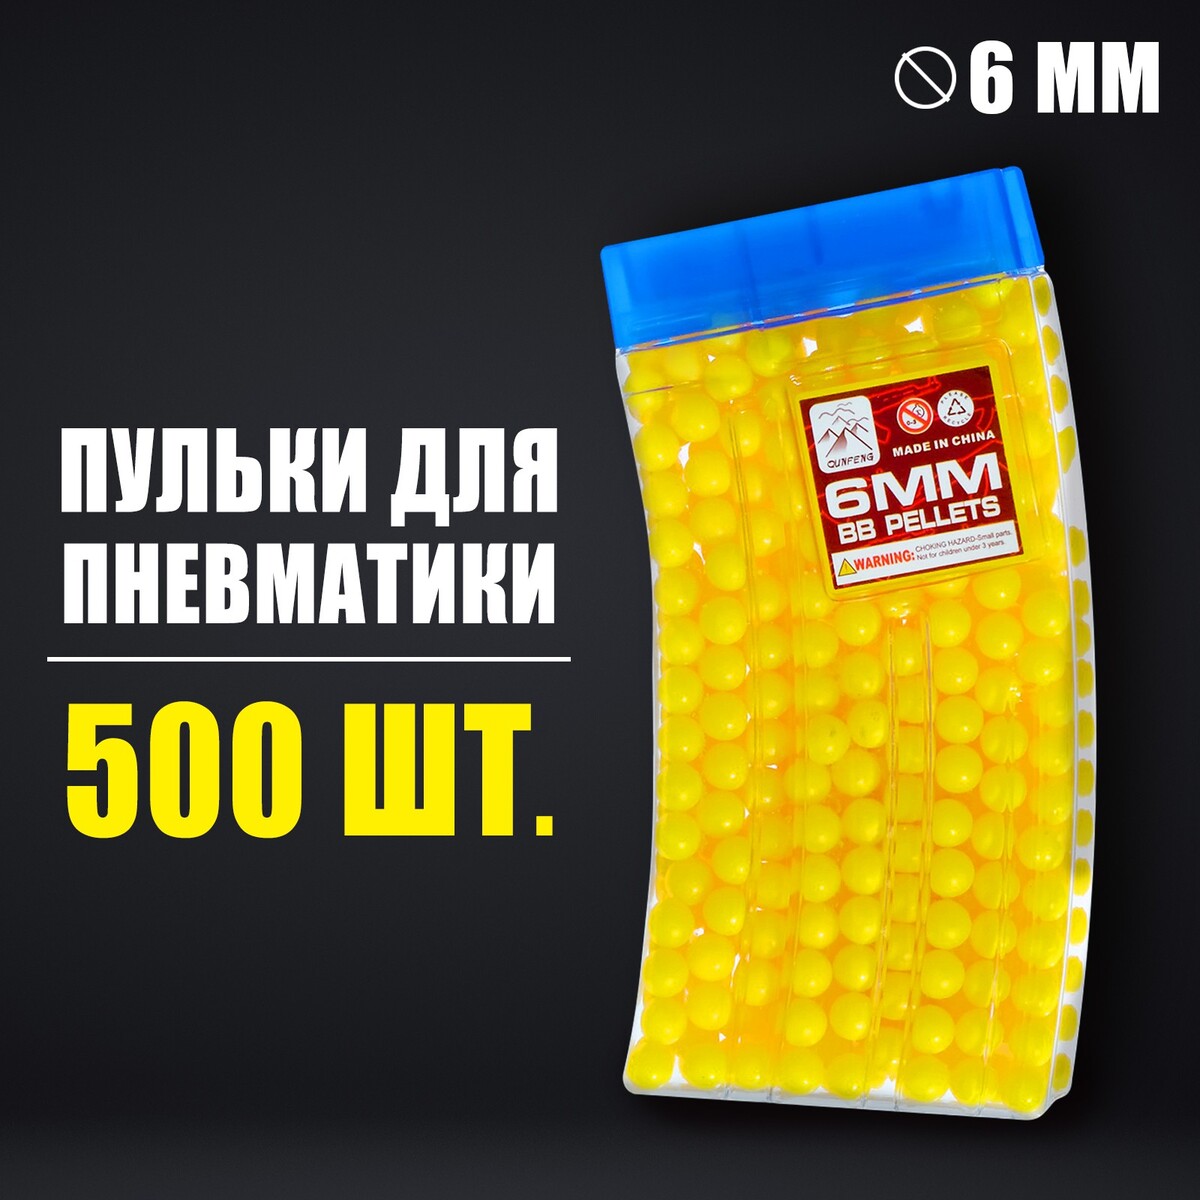 Пульки 6 мм в рожке, 500 шт., цвет желтый пульки 6 мм в рожке 500 шт желтый